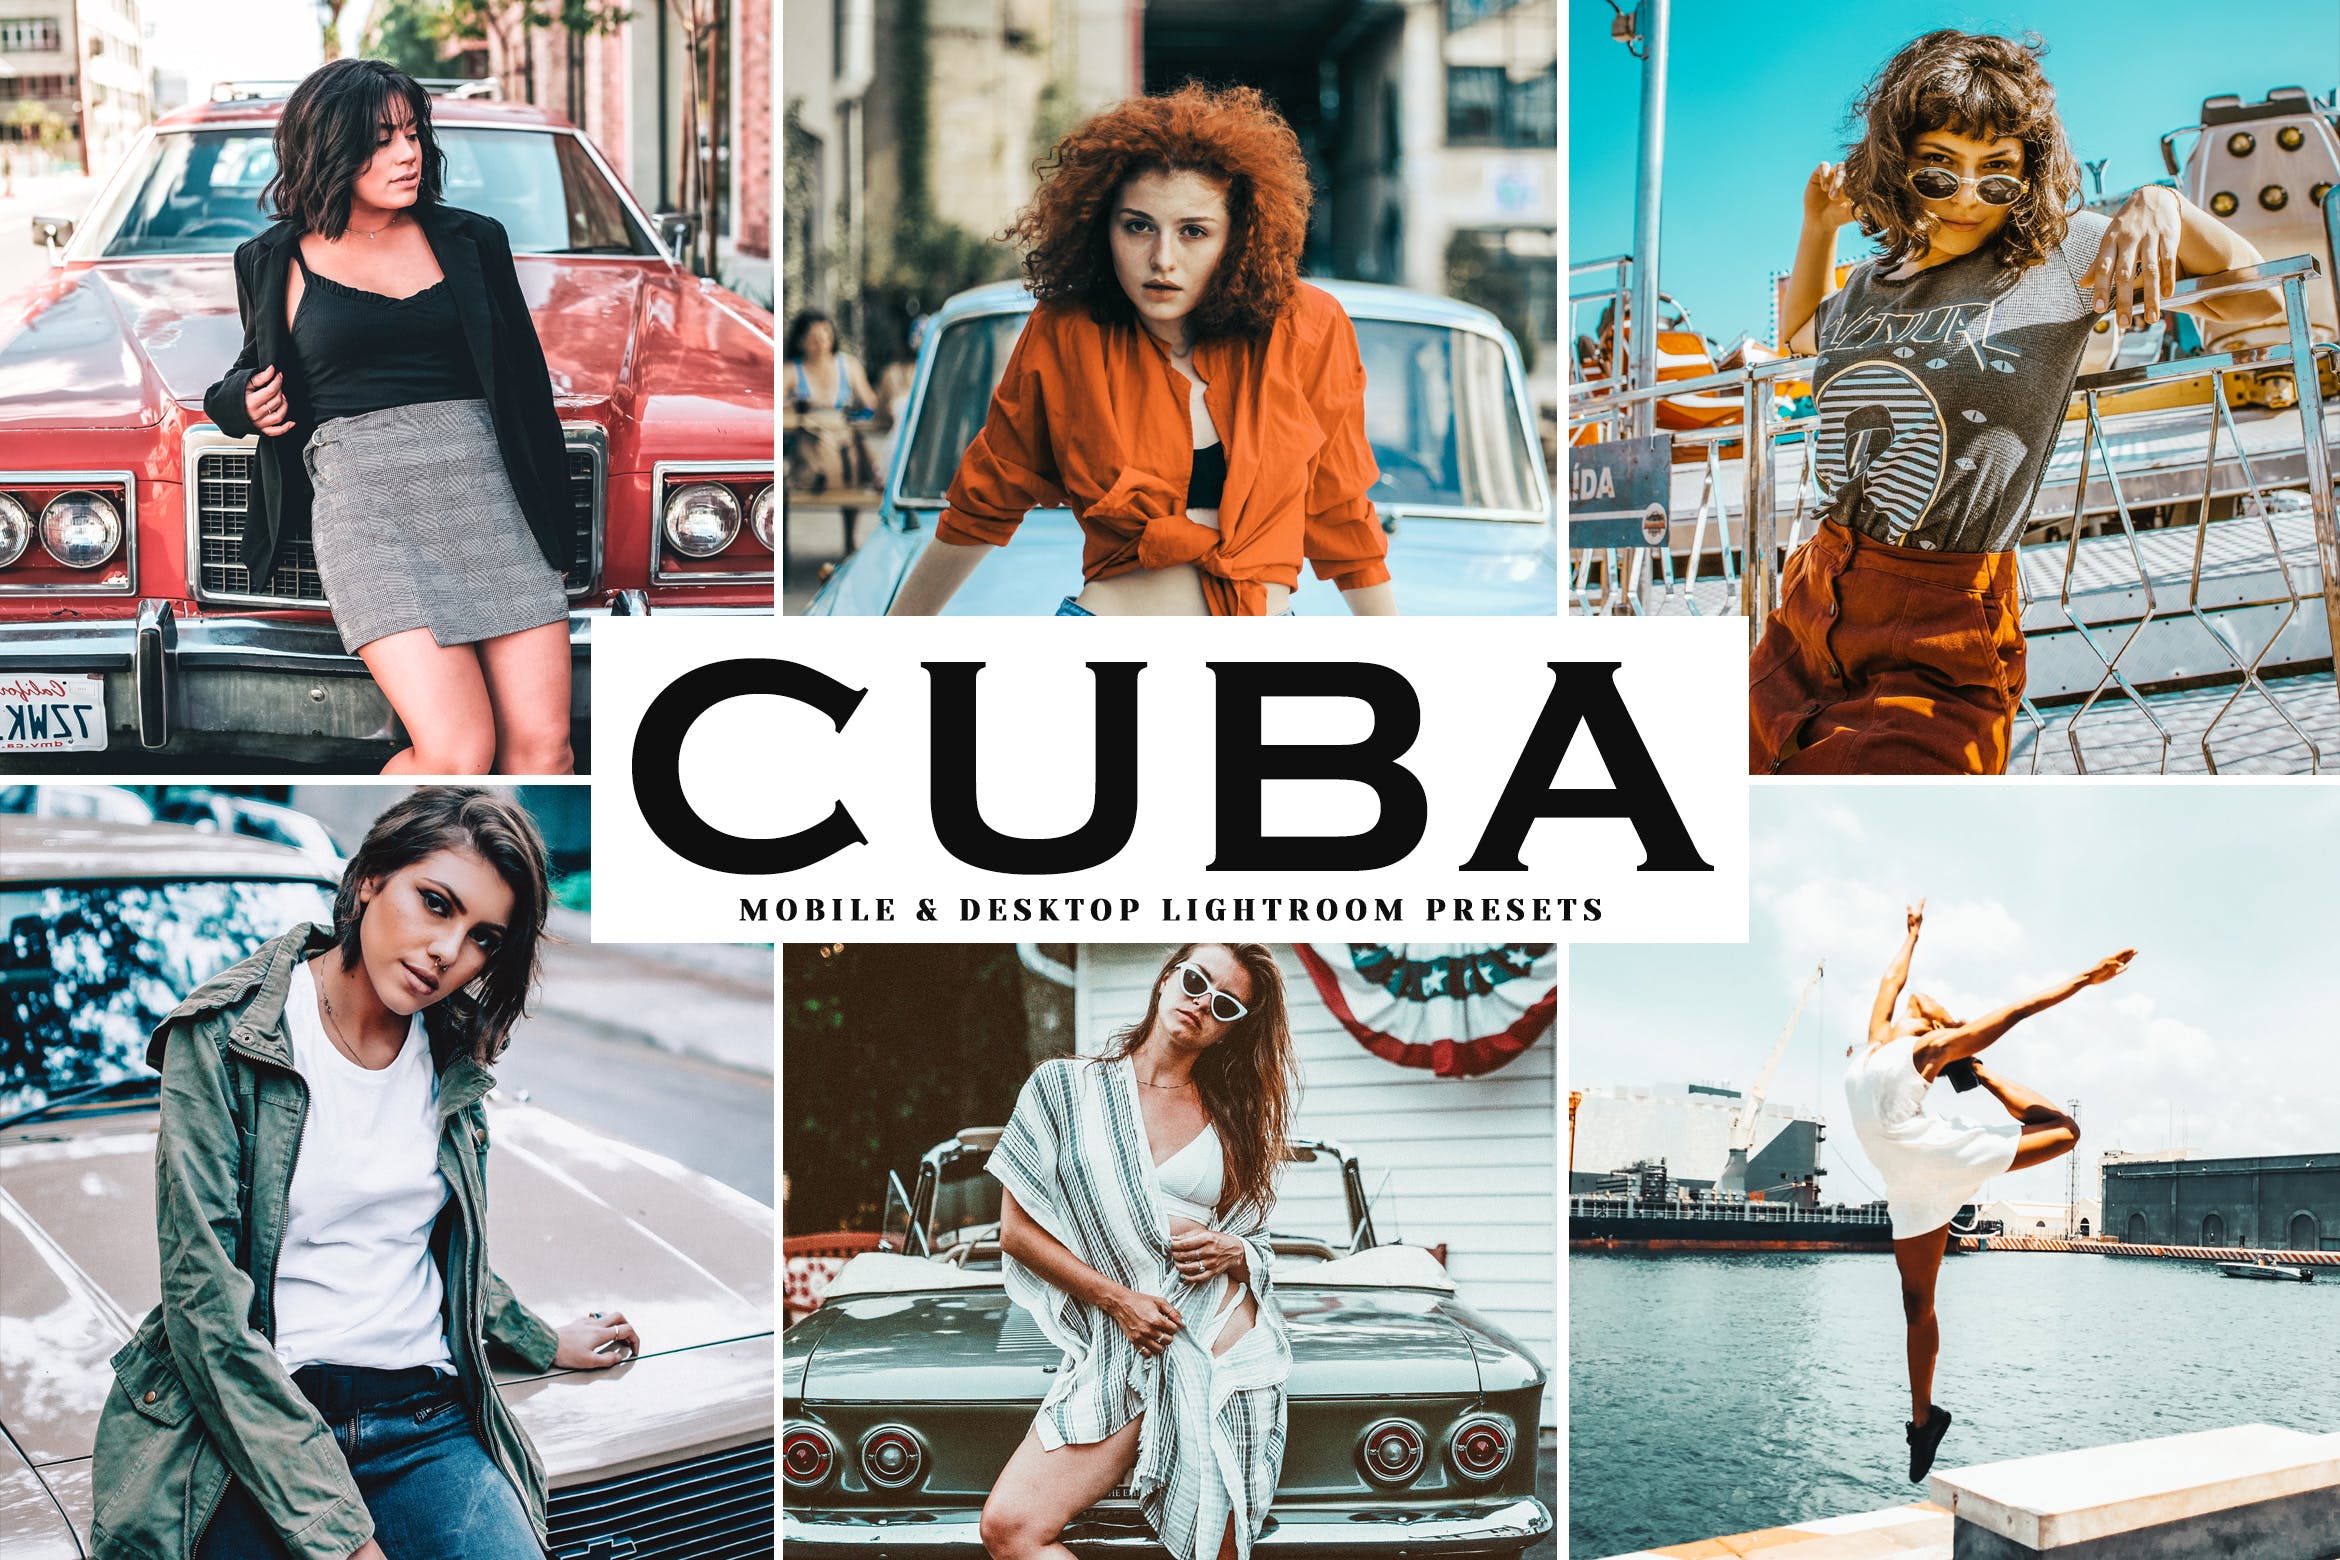 复古风格照片调色滤镜非凡图库精选LR预设 Cuba Mobile & Desktop Lightroom Presets插图